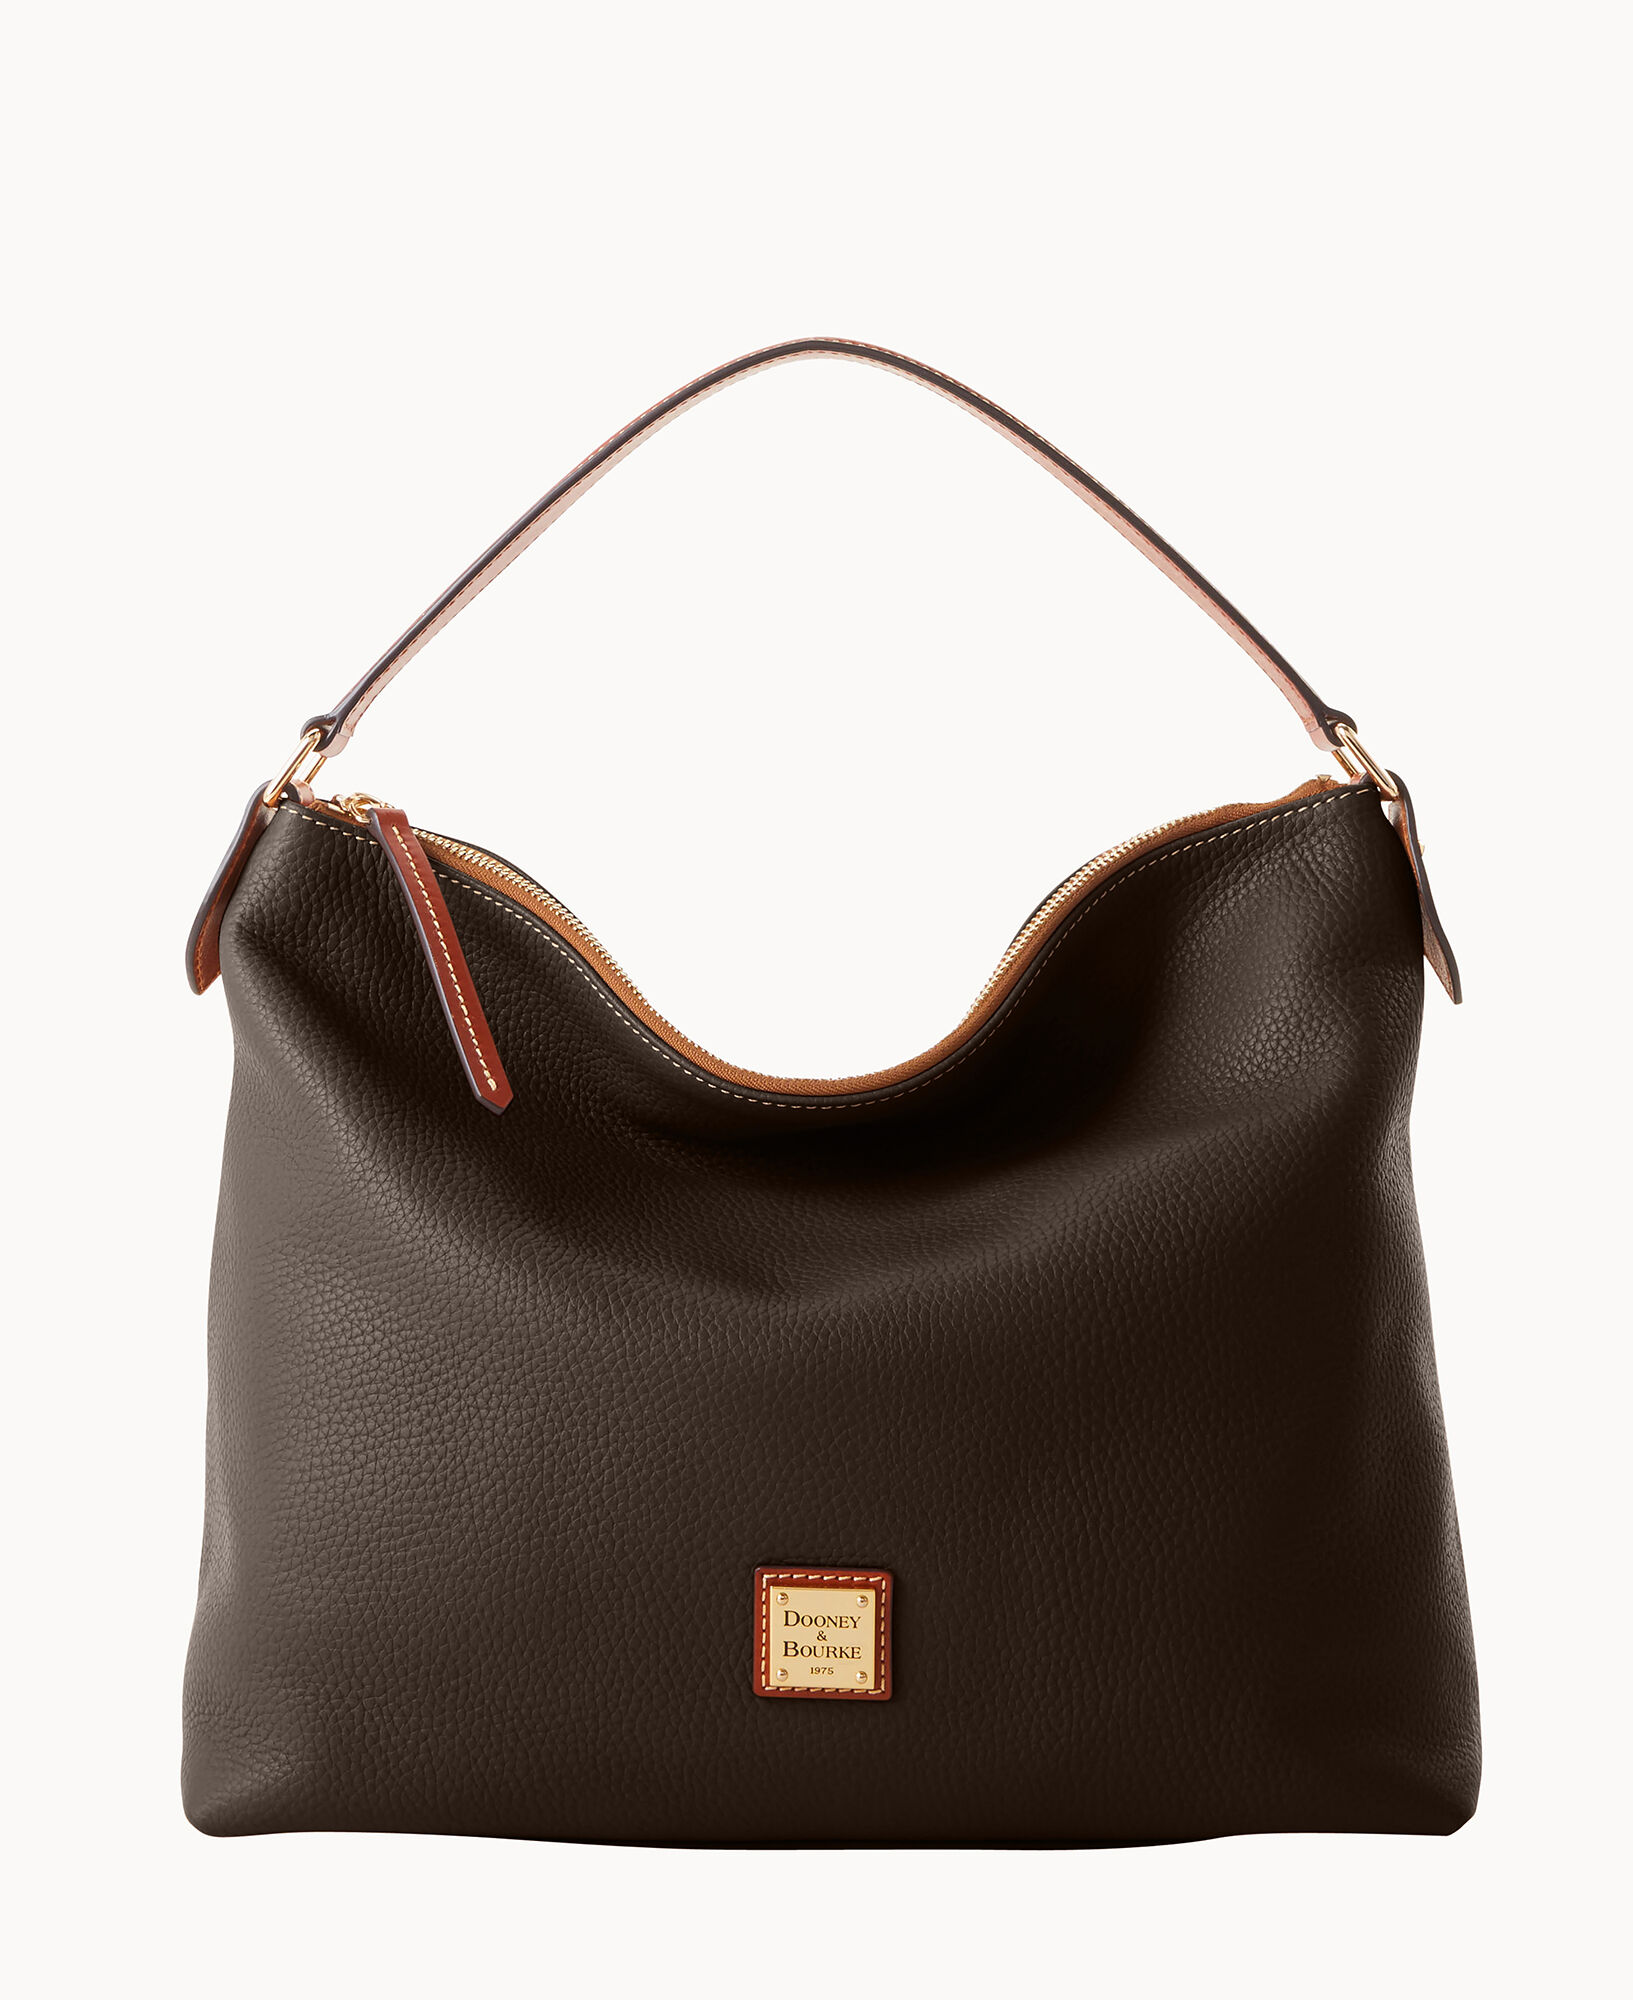 Dooney & Bourke Large East West Brown Pebbled Leather Shoulder Bag Travel  Purse